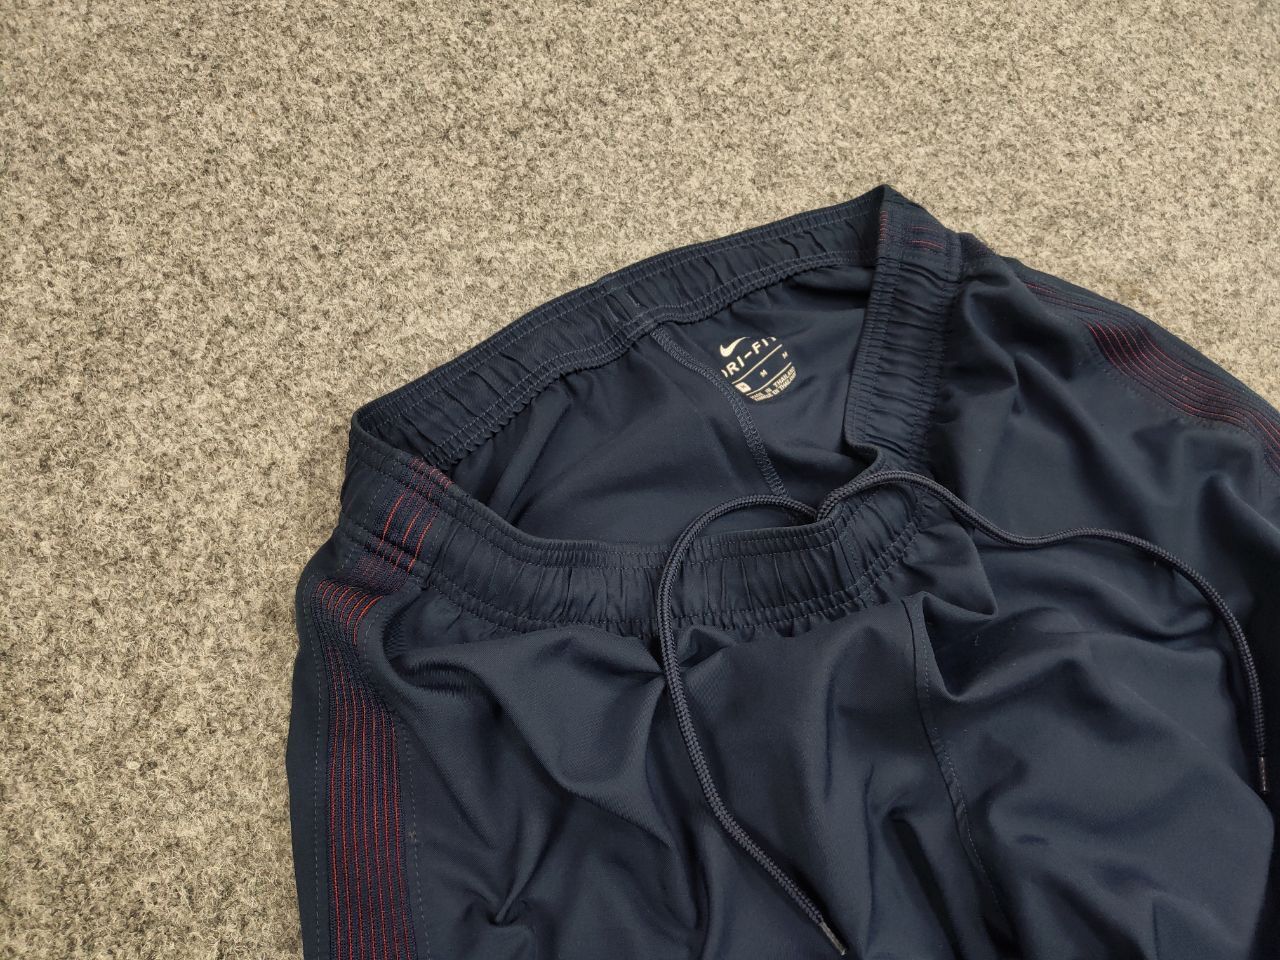 Nike Nike x Paris Saint-Germain PSG Vintage Style Blue Shorts Size US 32 / EU 48 - 6 Thumbnail